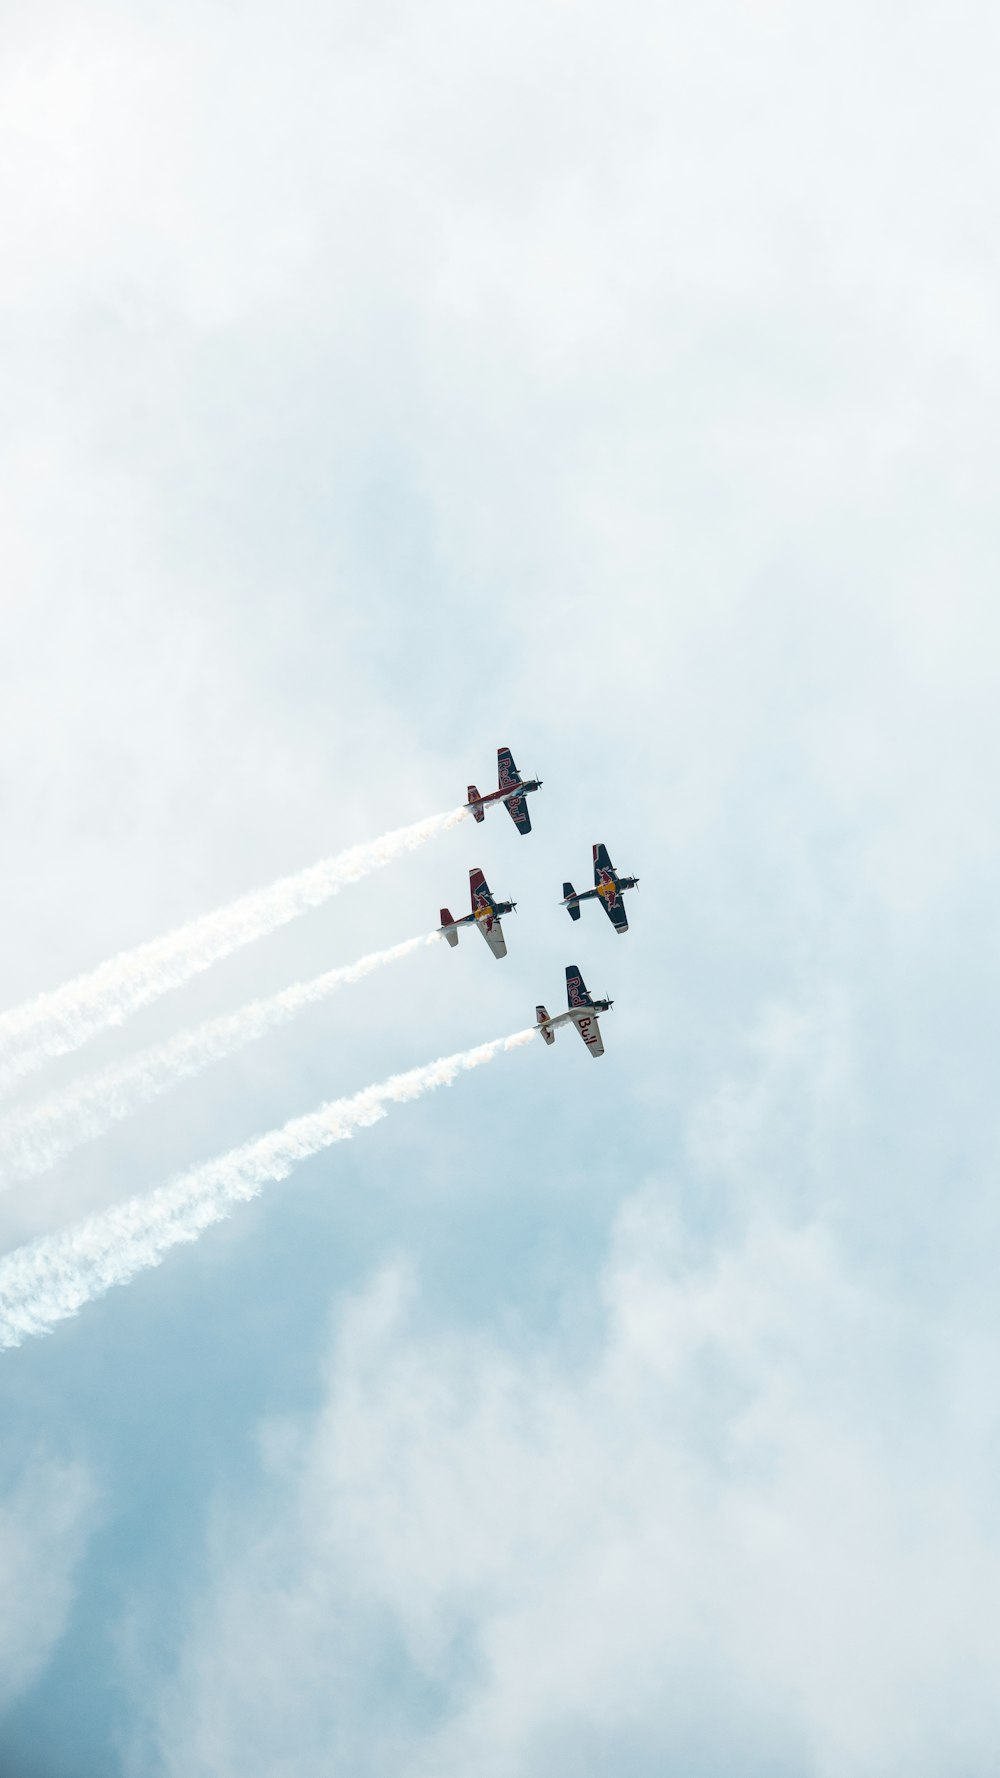 Cinco aviones a reacción bajo un cielo nublado